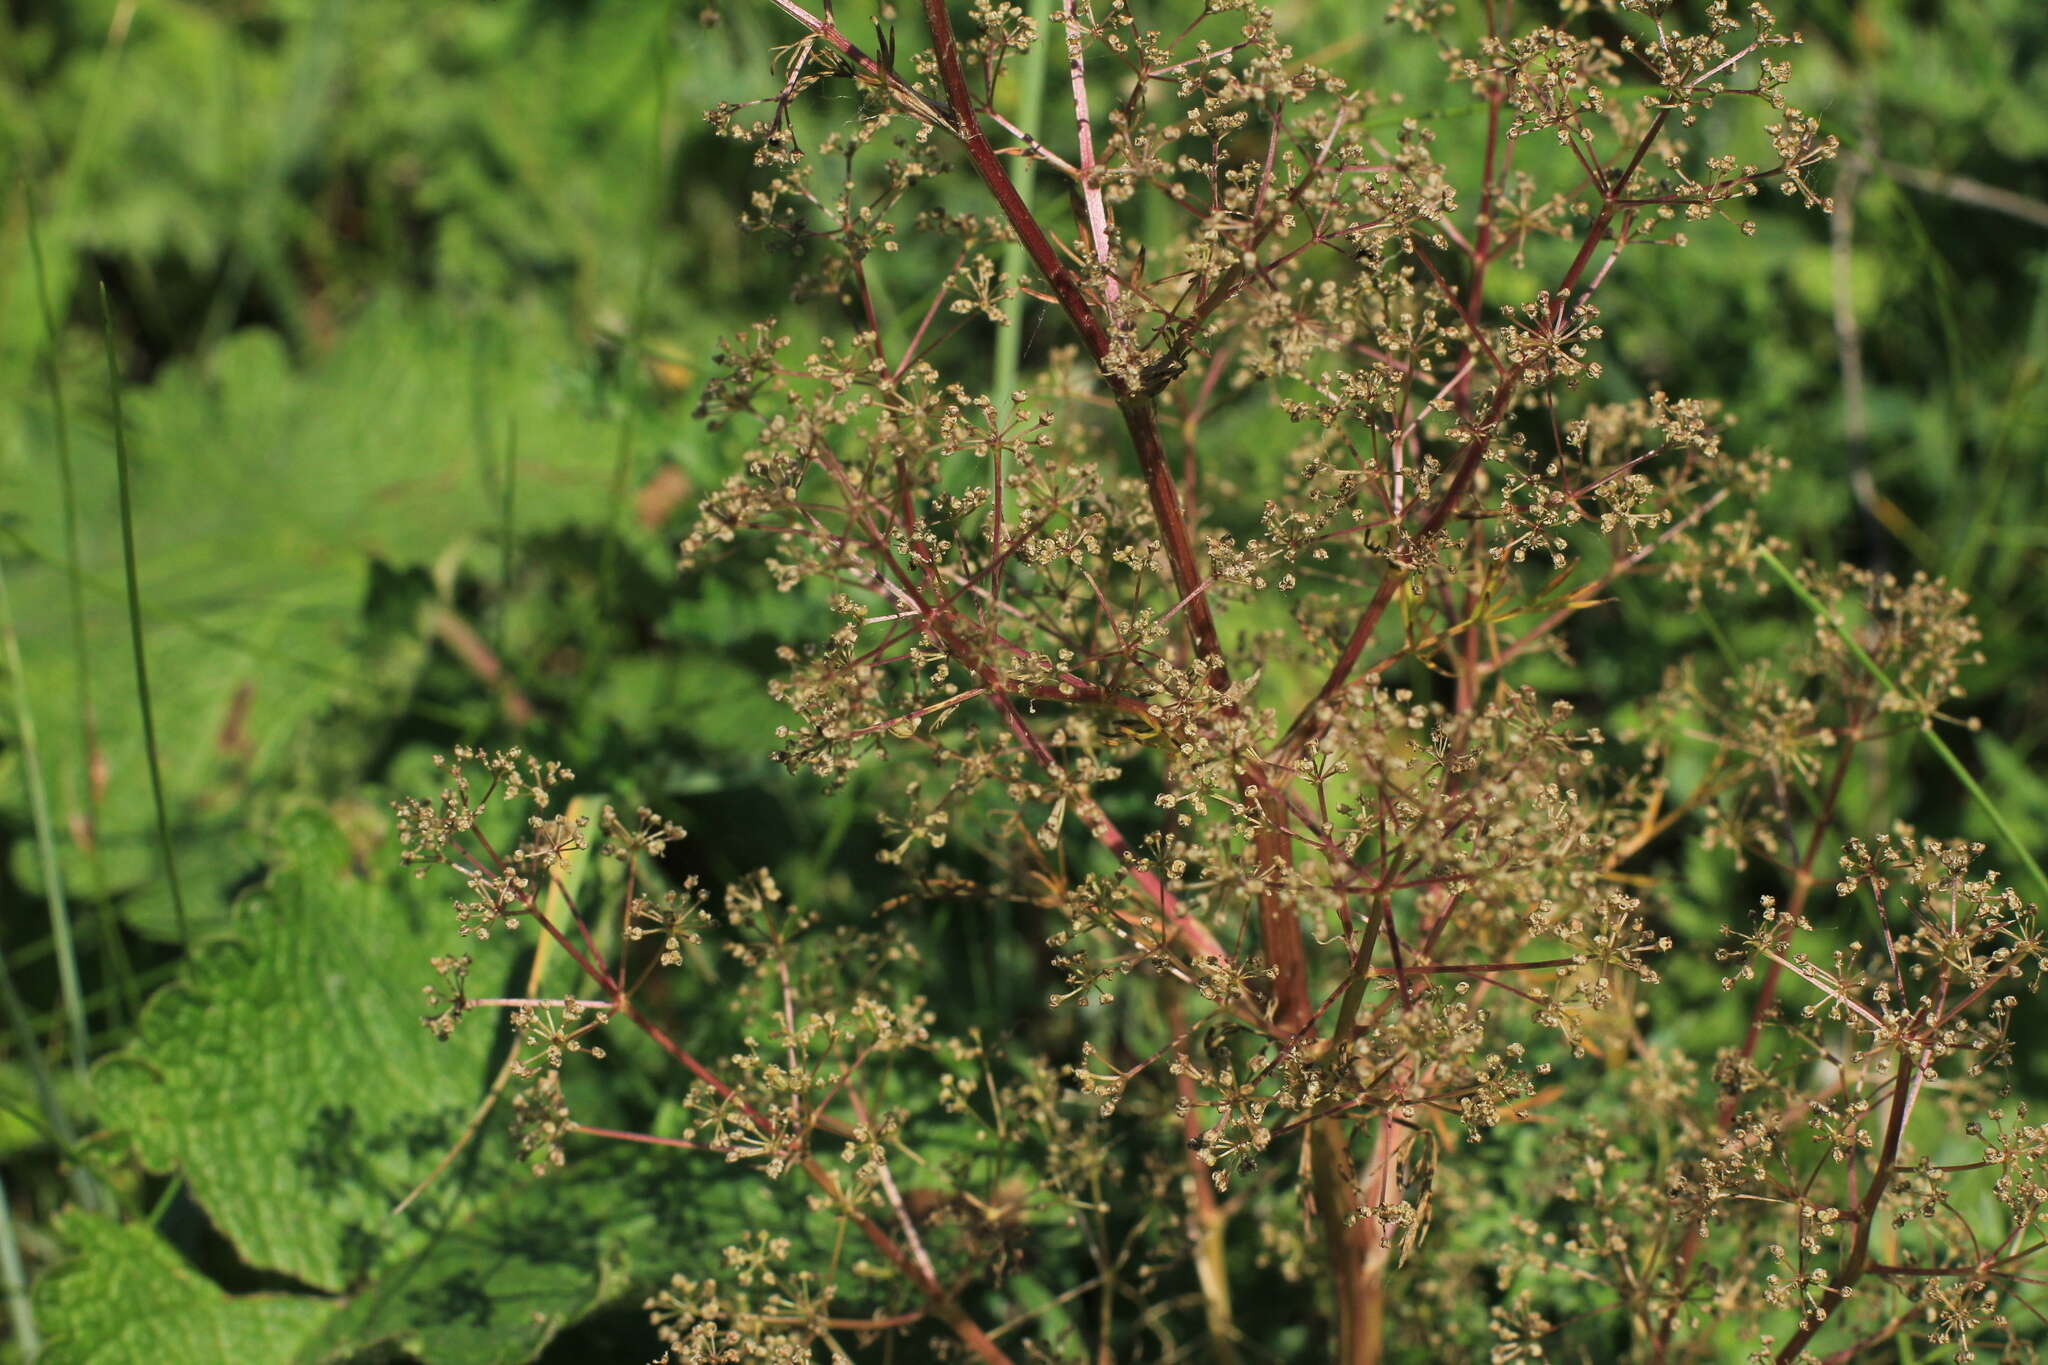 Image of Trinia multicaulis (Poir.) Schischkin